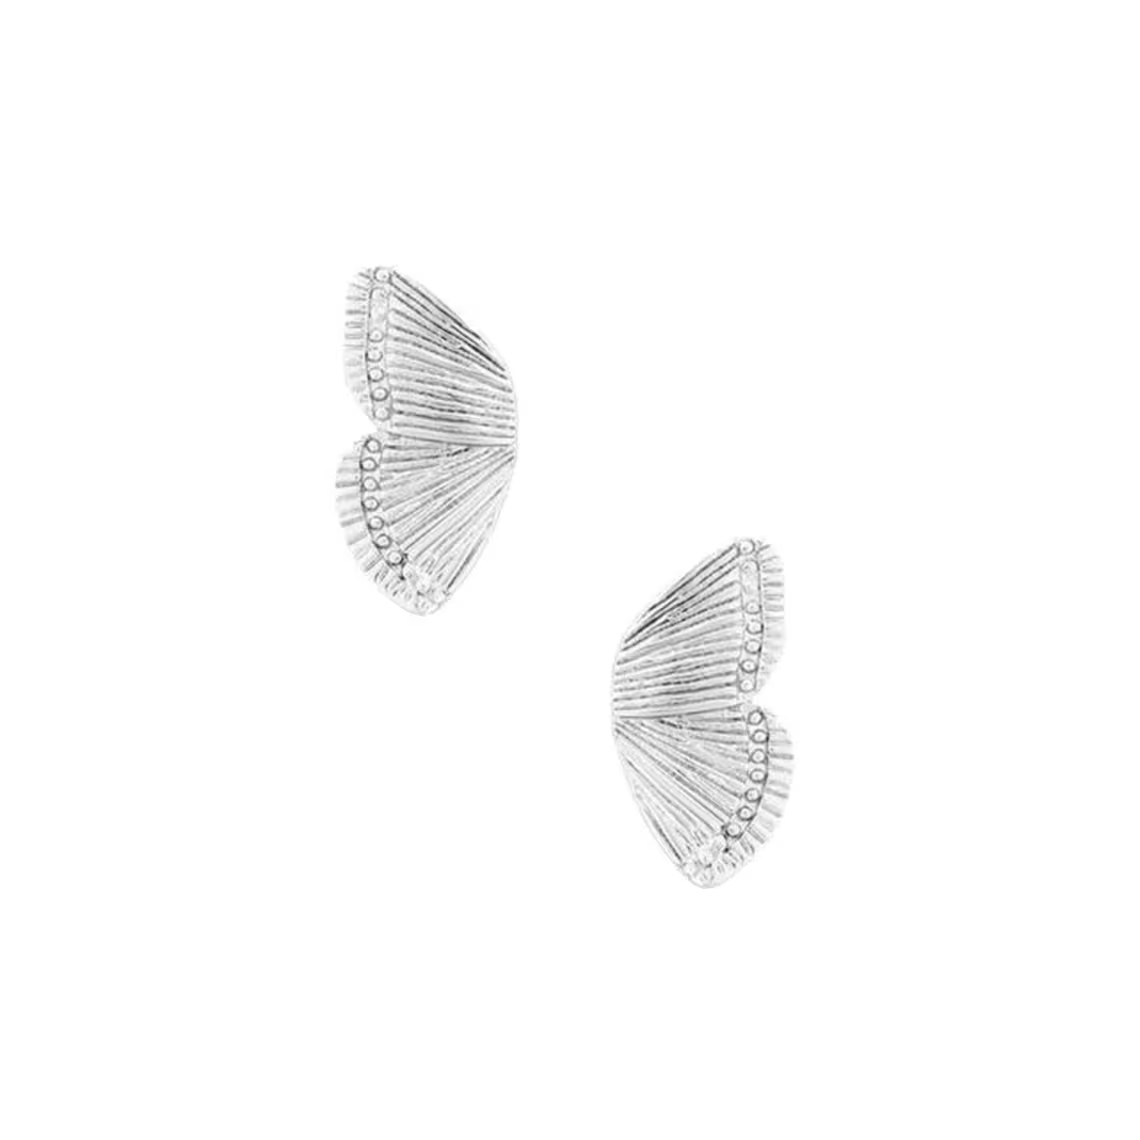 Butterfly Wings Earrings Simple Half Wing Stud Earrings